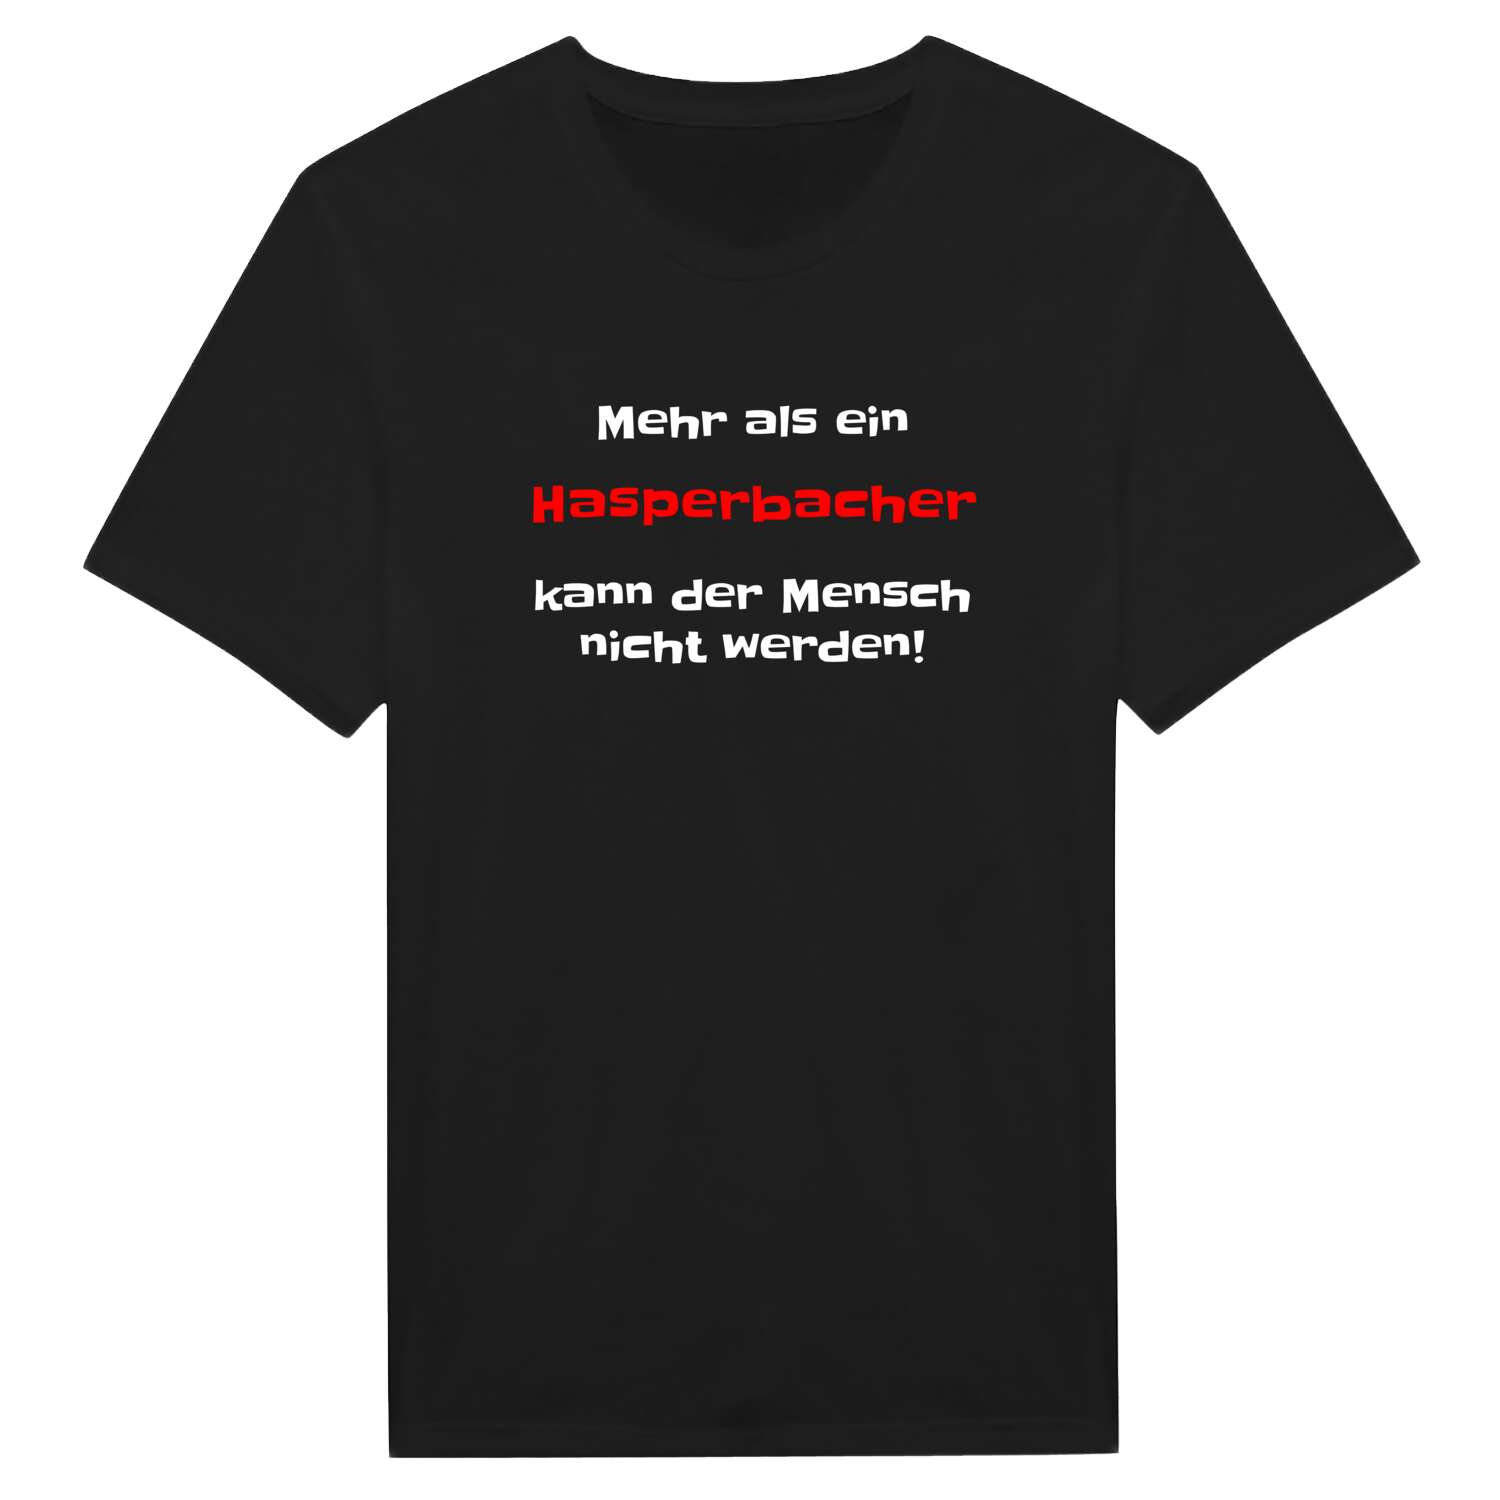 Hasperbach T-Shirt »Mehr als ein«